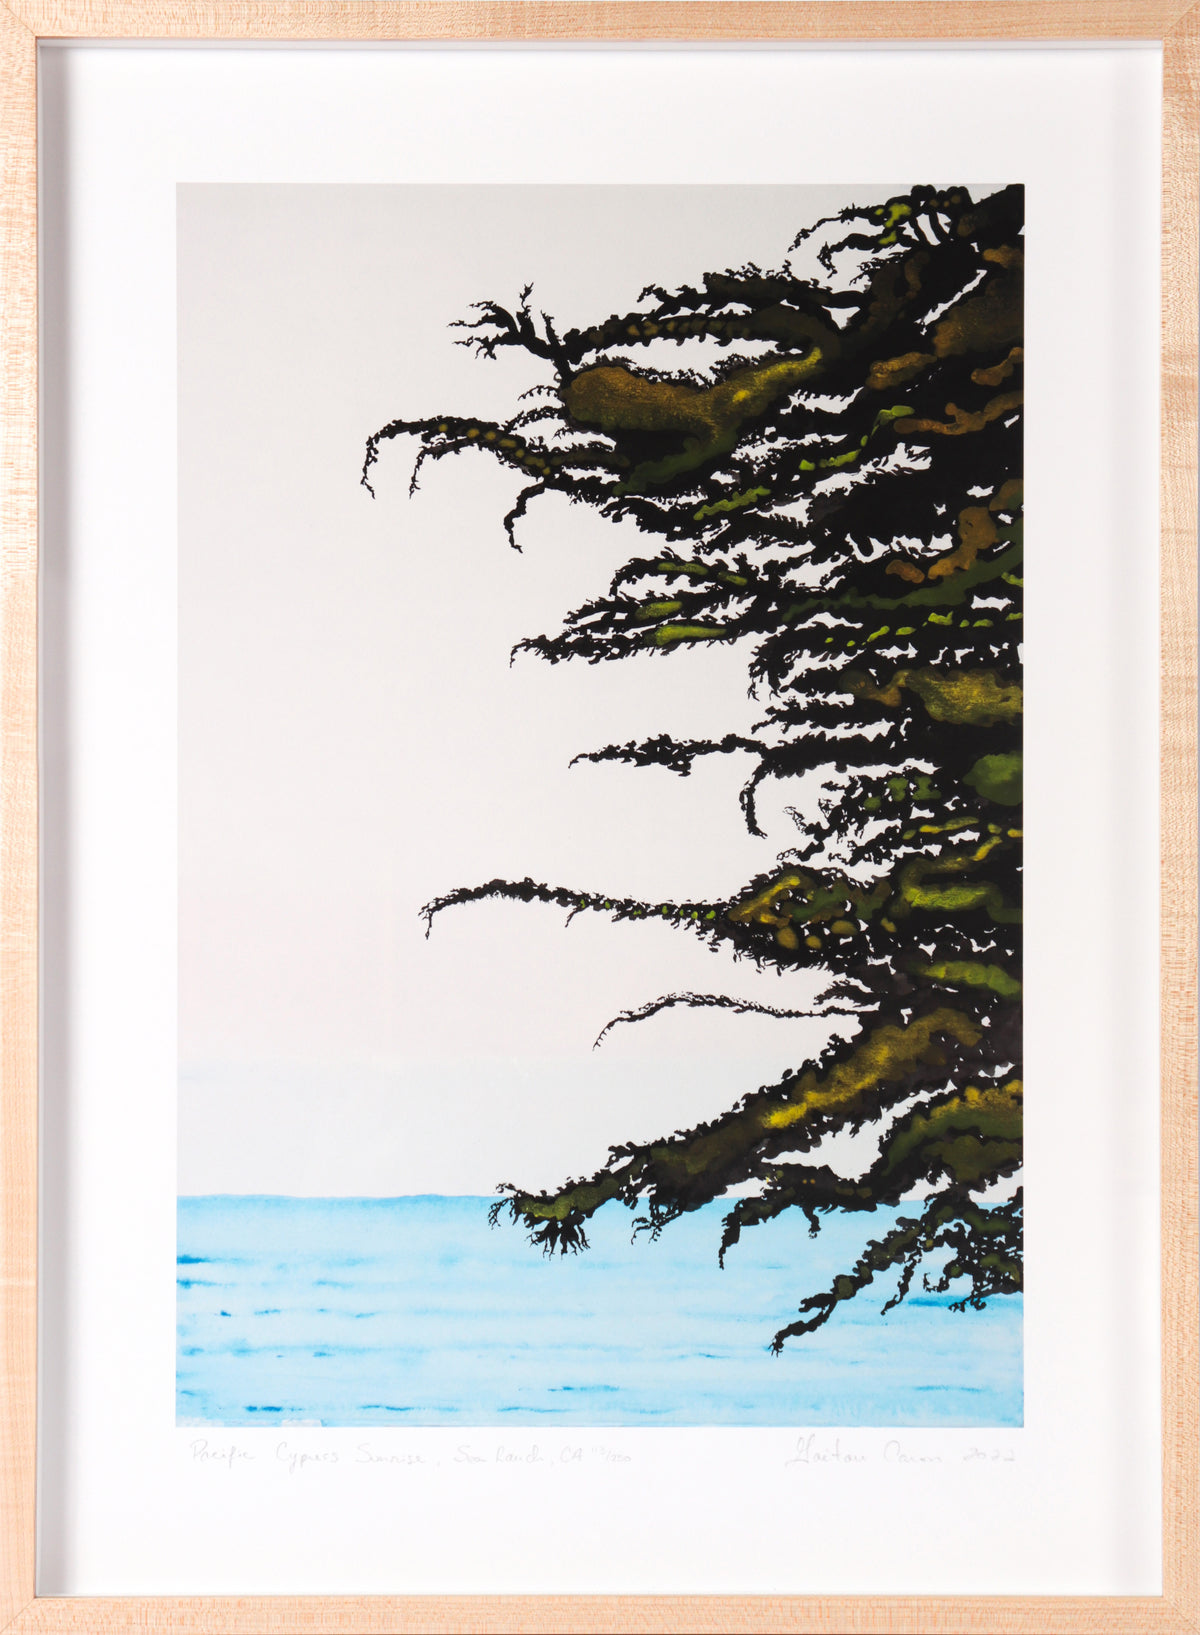 &lt;i&gt;Pacific Cypress Sunrise&lt;/i&gt; &lt;br&gt;Limited Edition Archival Print &lt;br&gt;&lt;br&gt;ART-22859